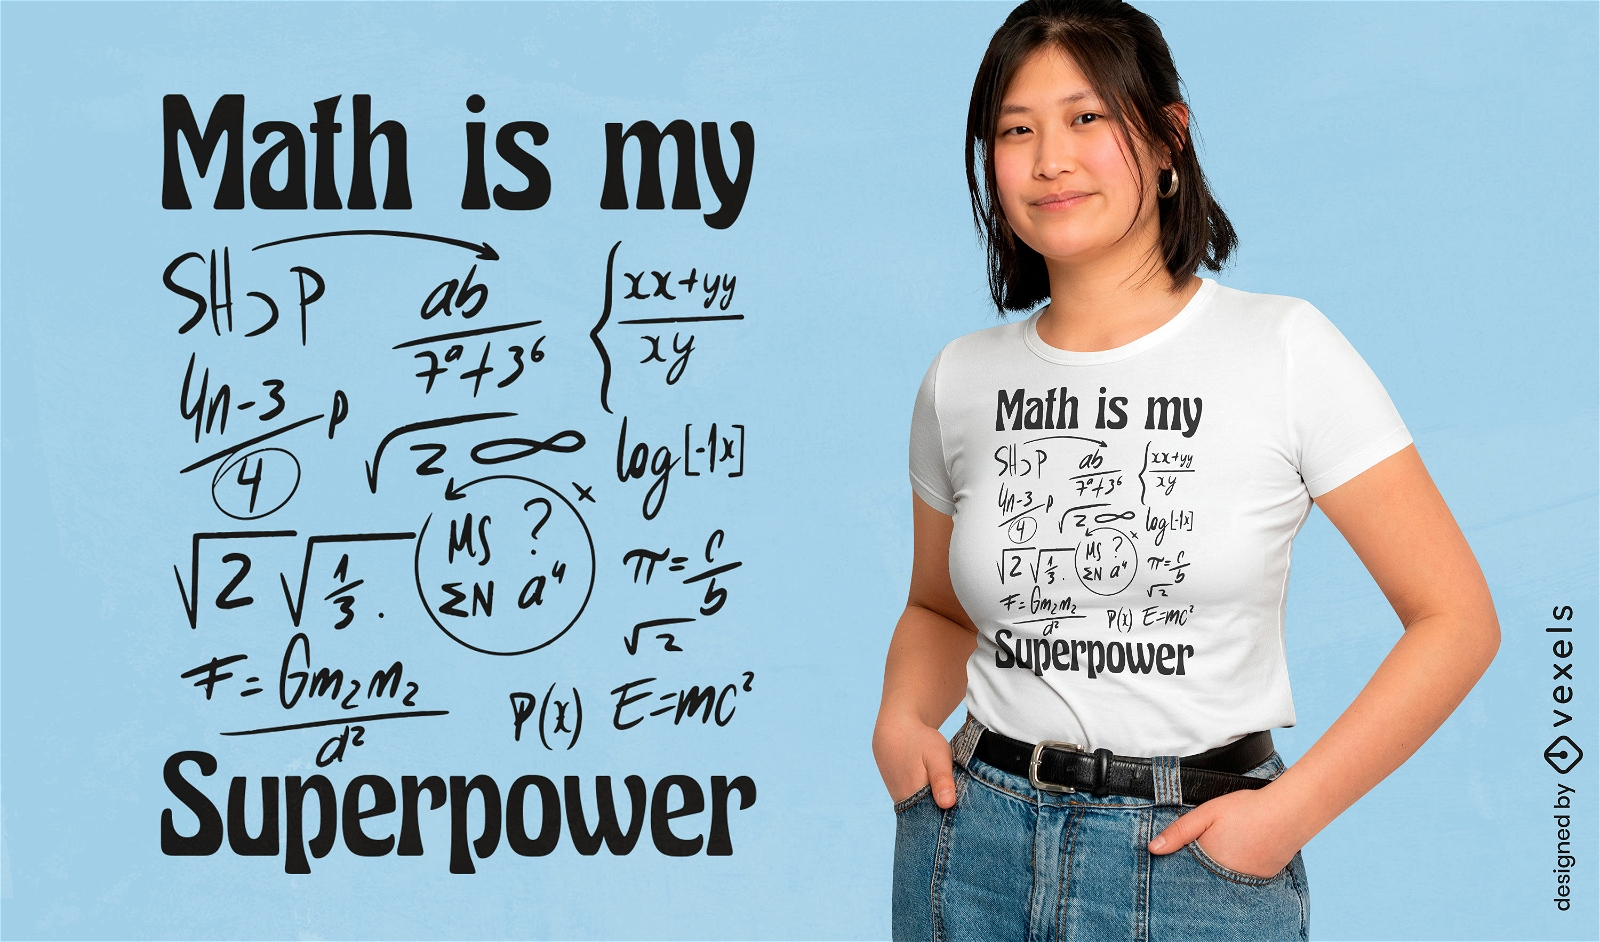 Math is my superpower t-shirt design